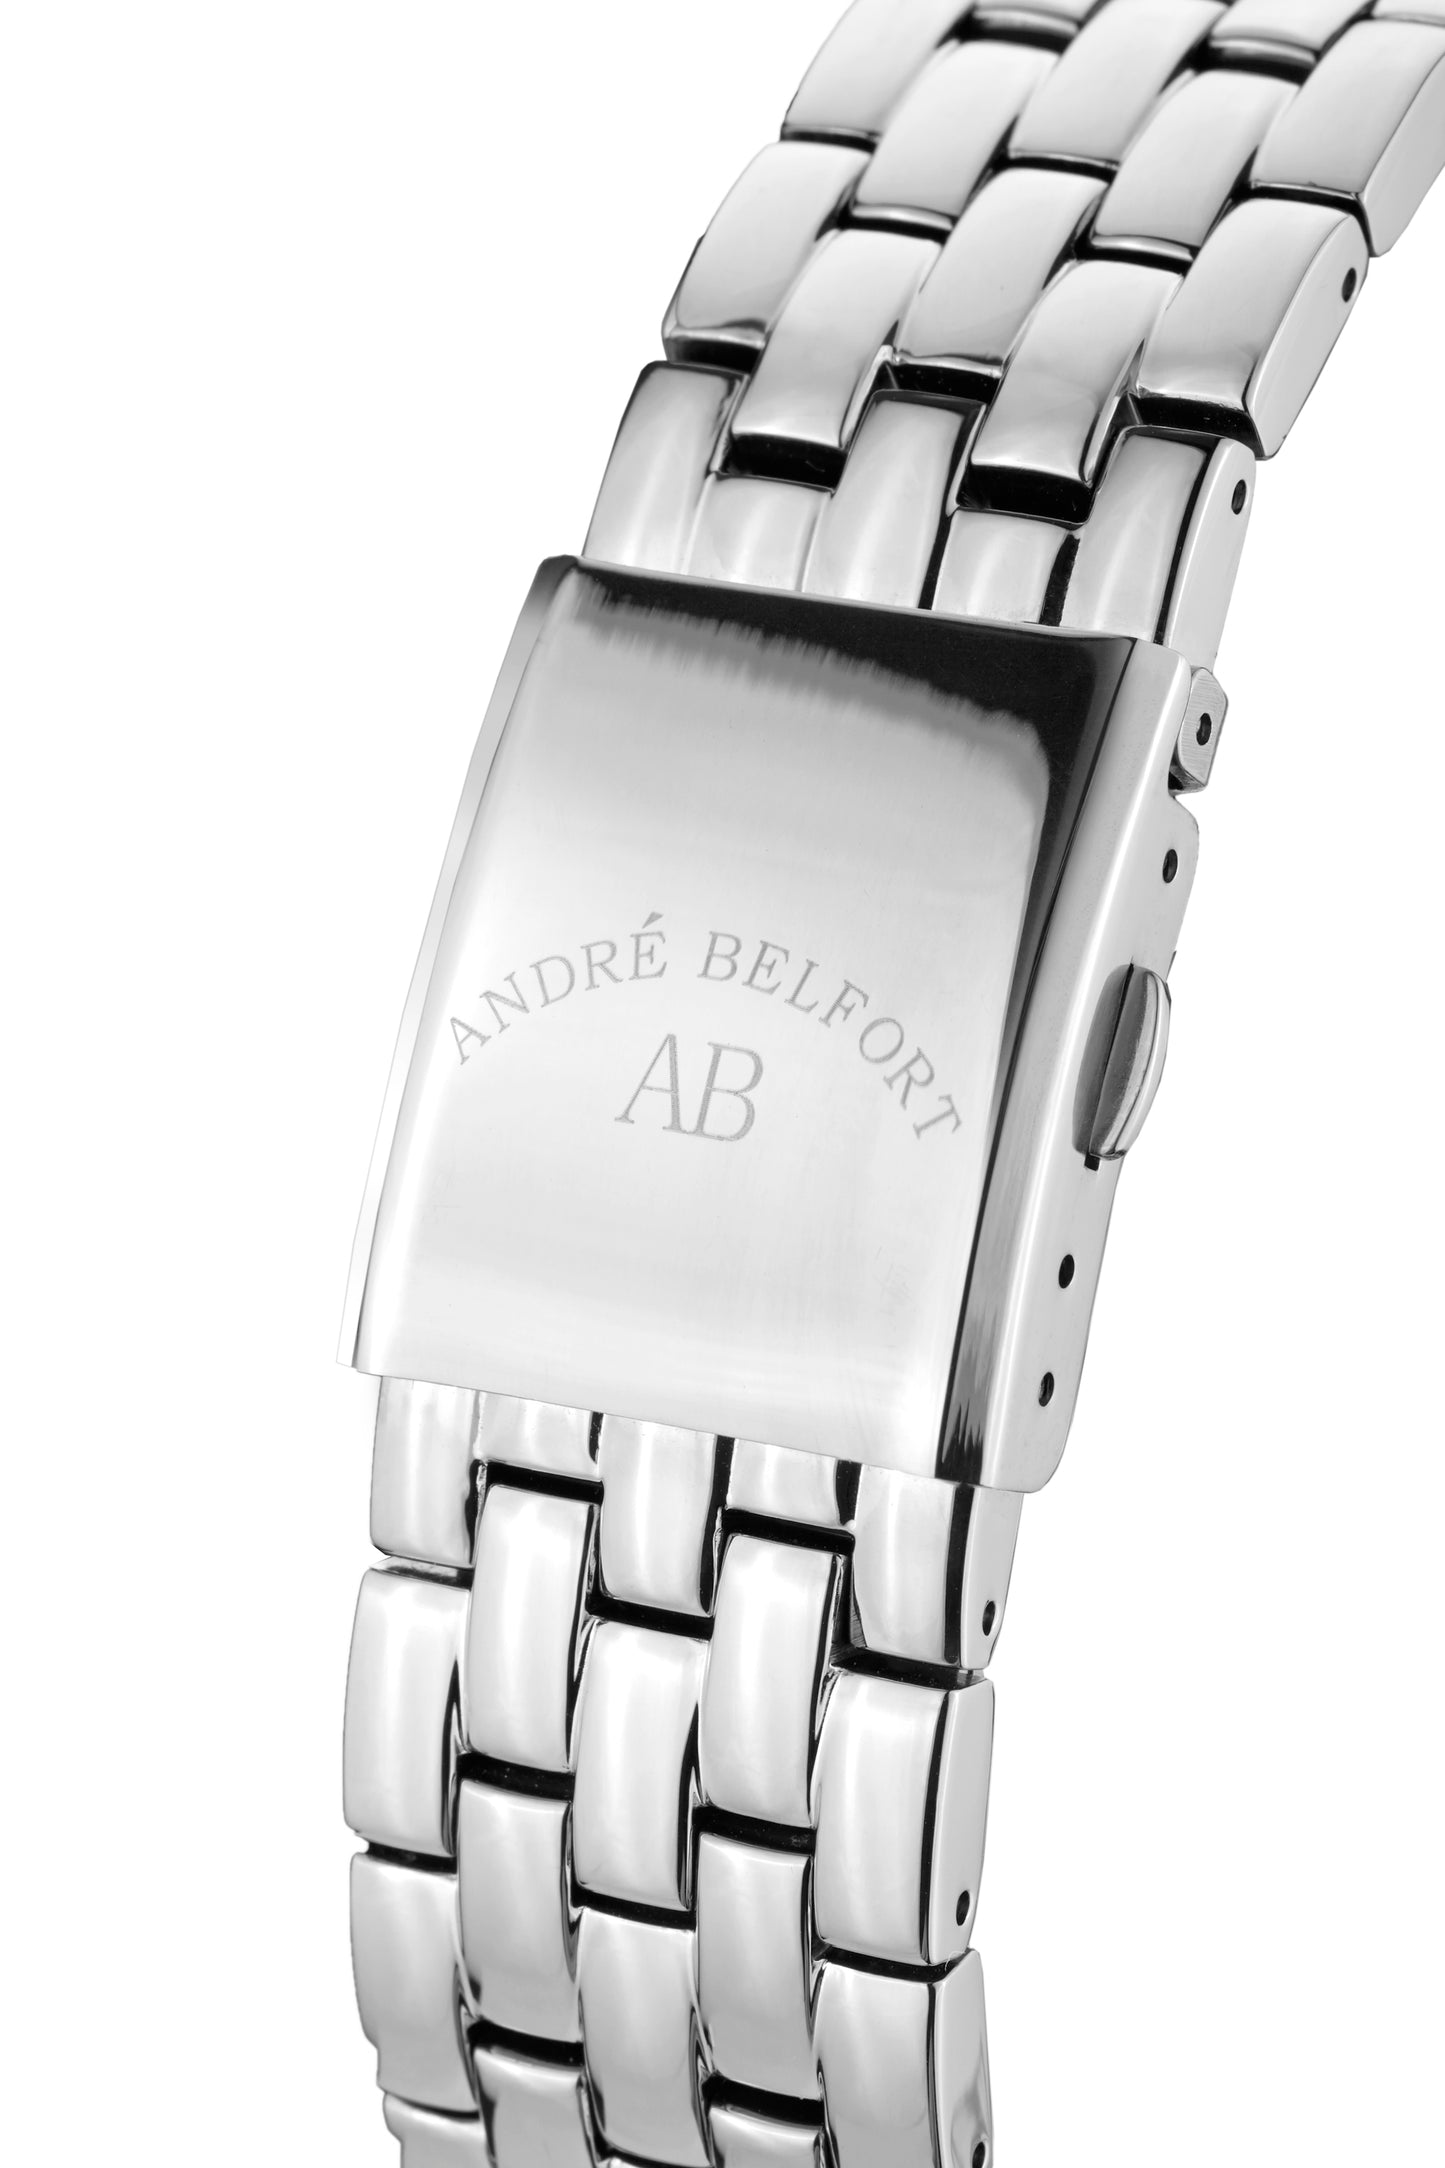 Automatic watches — Étoile Polaire — André Belfort — black